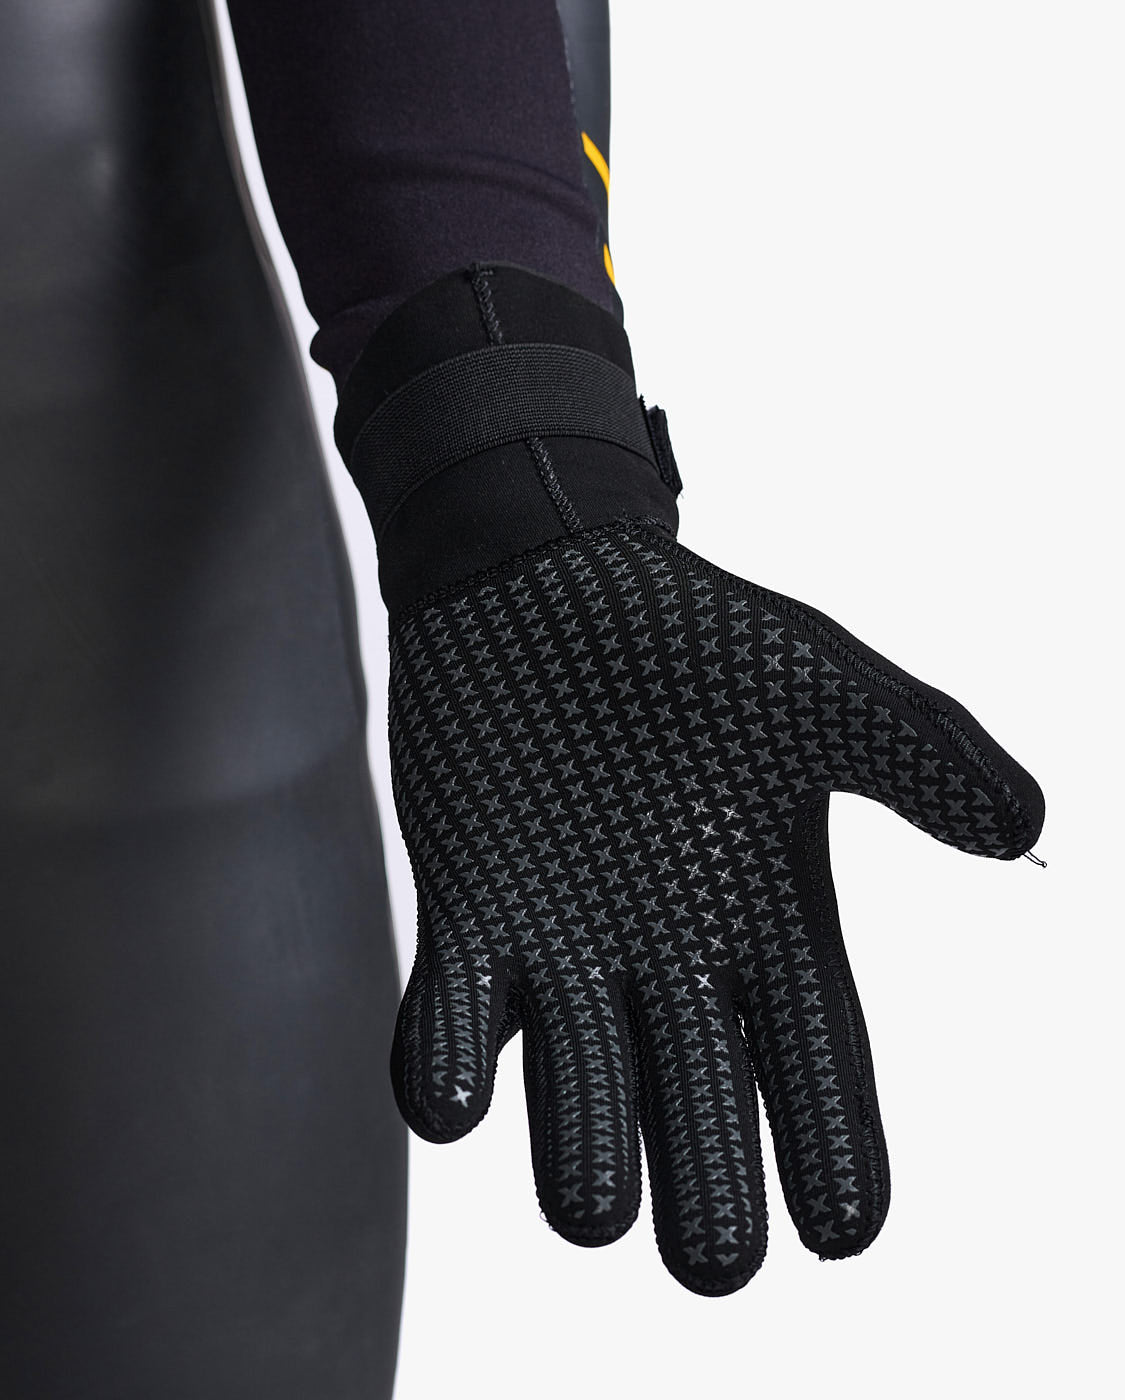 Propel Neoprene Gloves